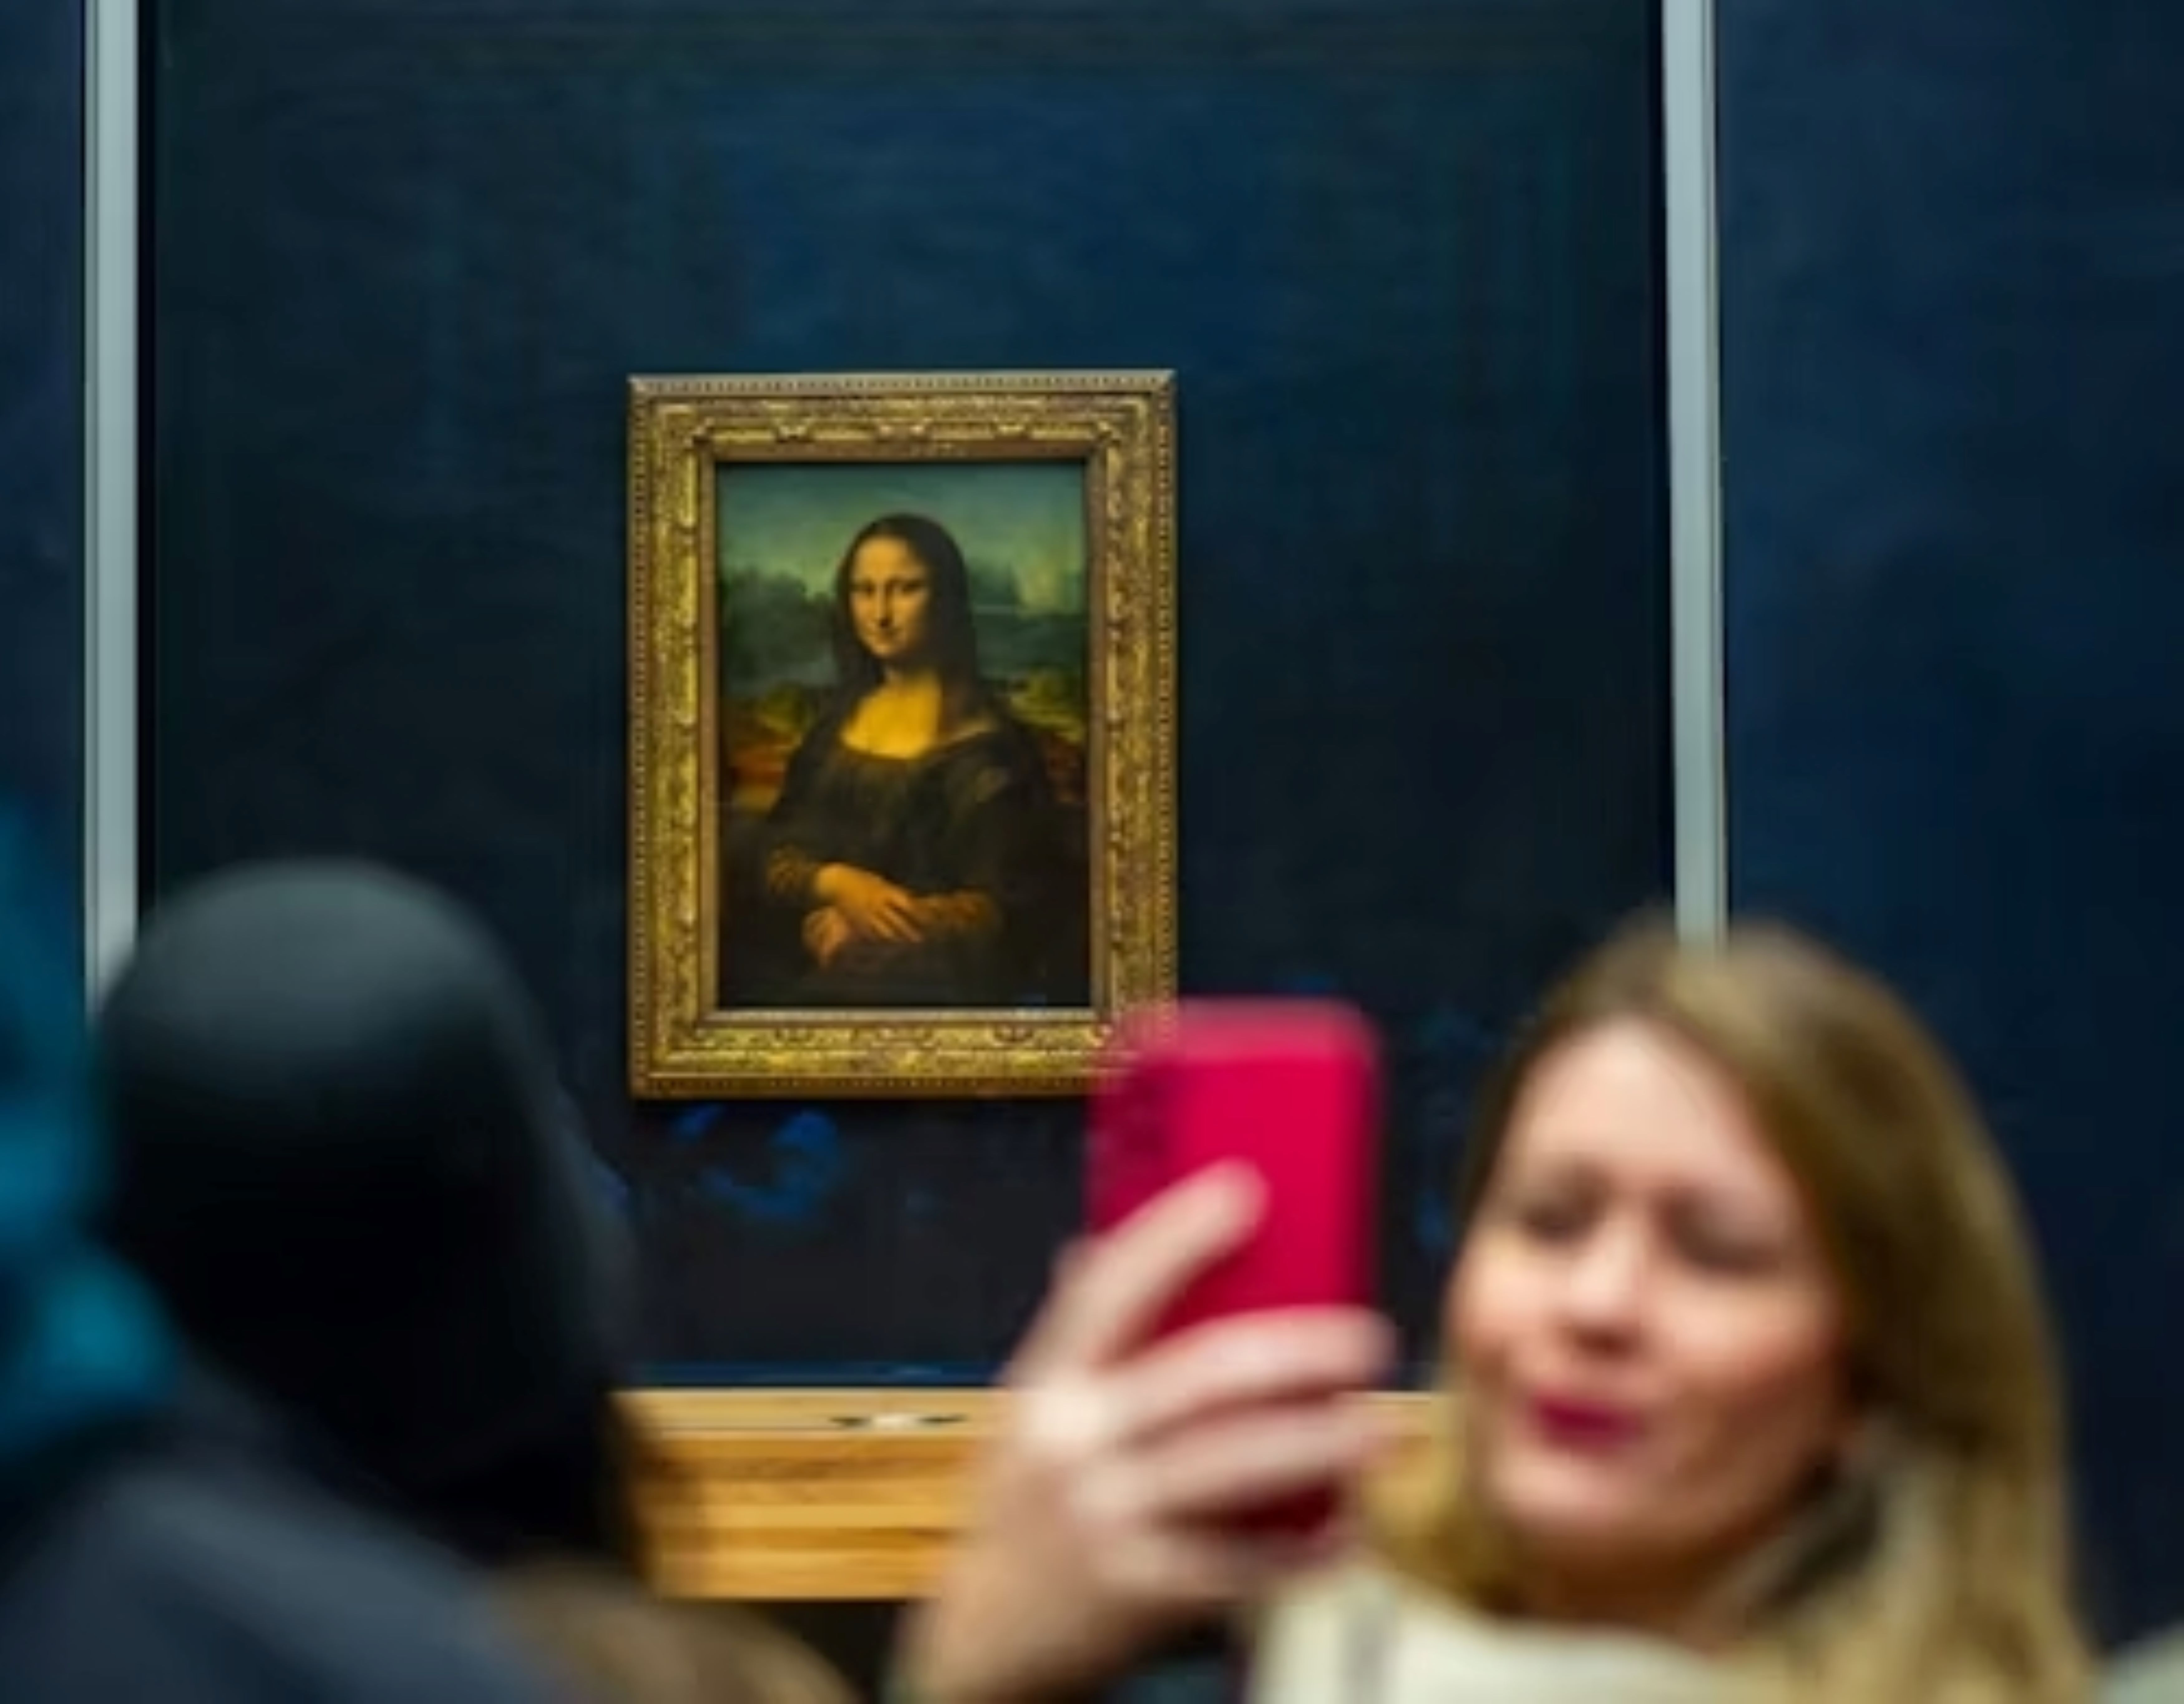 Entrada no museu do Louvre com acesso ao quadro da Mona Lisa (acesso reservado) e bilhete de cruzeiro